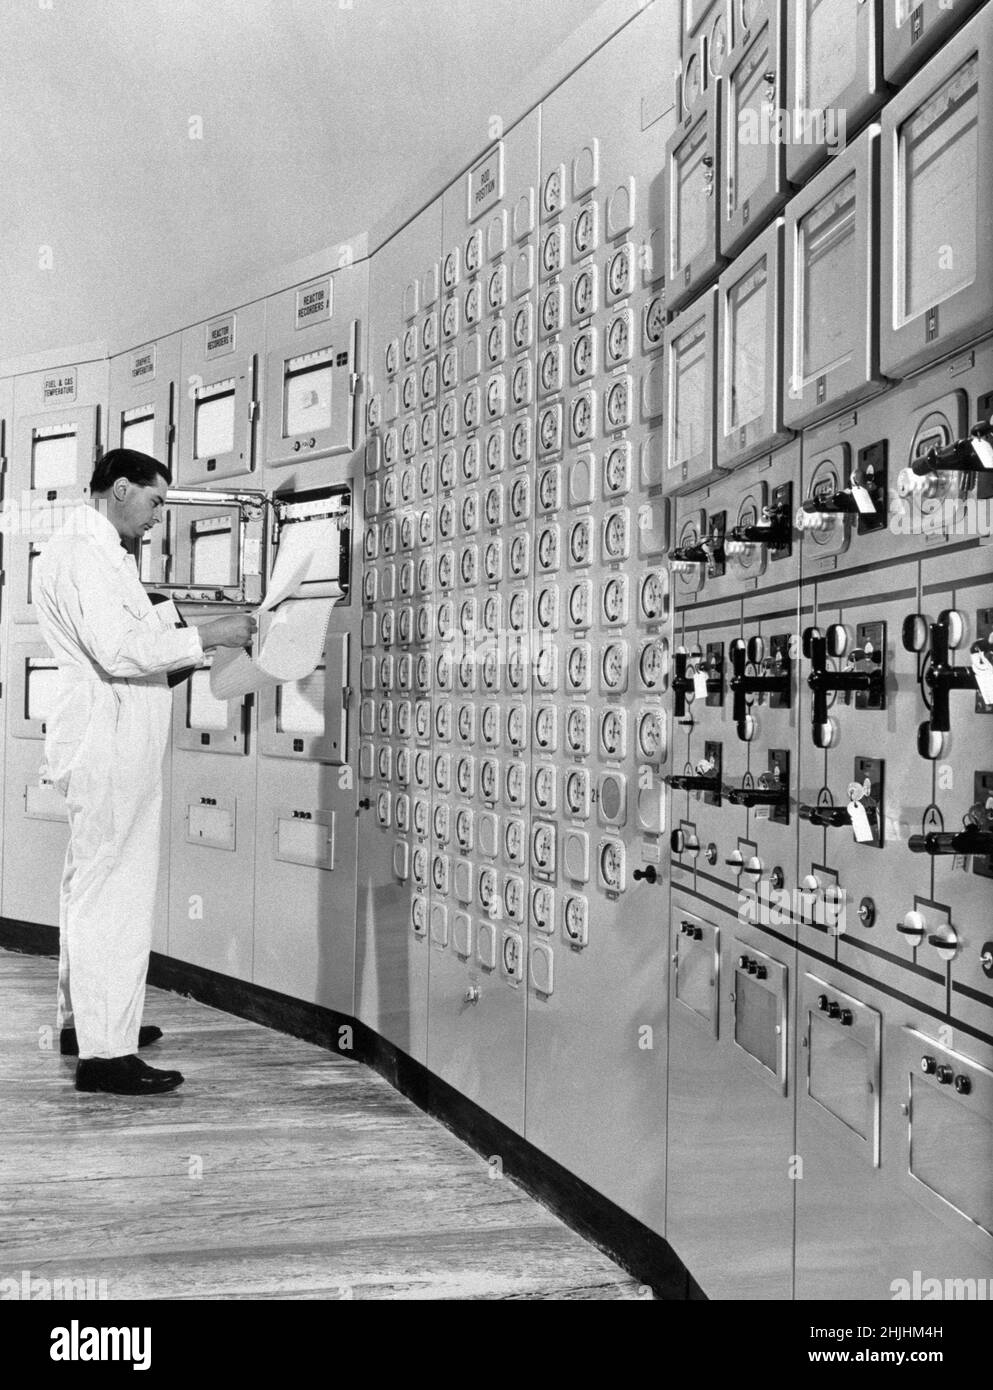 1962: Photo de dossier datée d'août 1962 d'un technicien à l'intérieur de la salle de contrôle centrale de la centrale nucléaire de Bradwell-on-Sea, dans l'Essex, qui a été l'un des deux premiers réacteurs Magnox du pays à commencer ses opérations cette année-là.Date de publication : dimanche 30 janvier 2022. Banque D'Images